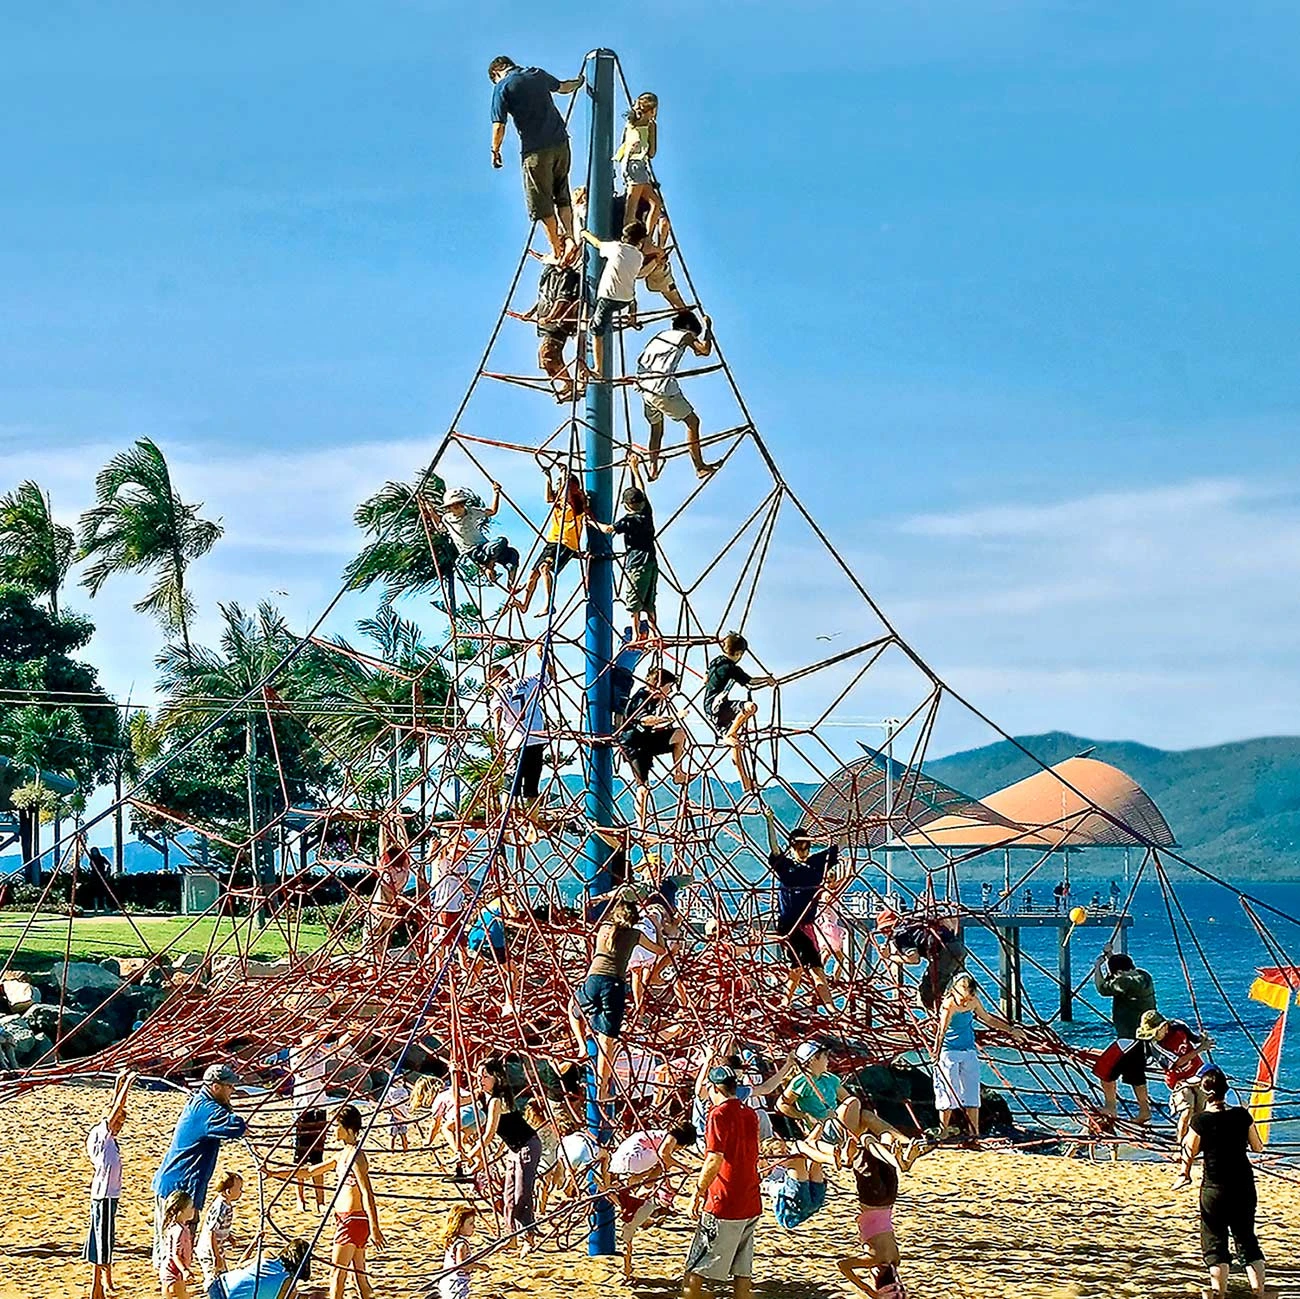 Spielplatz-Seilkletterer erkunden ein großes Seilspielgerät